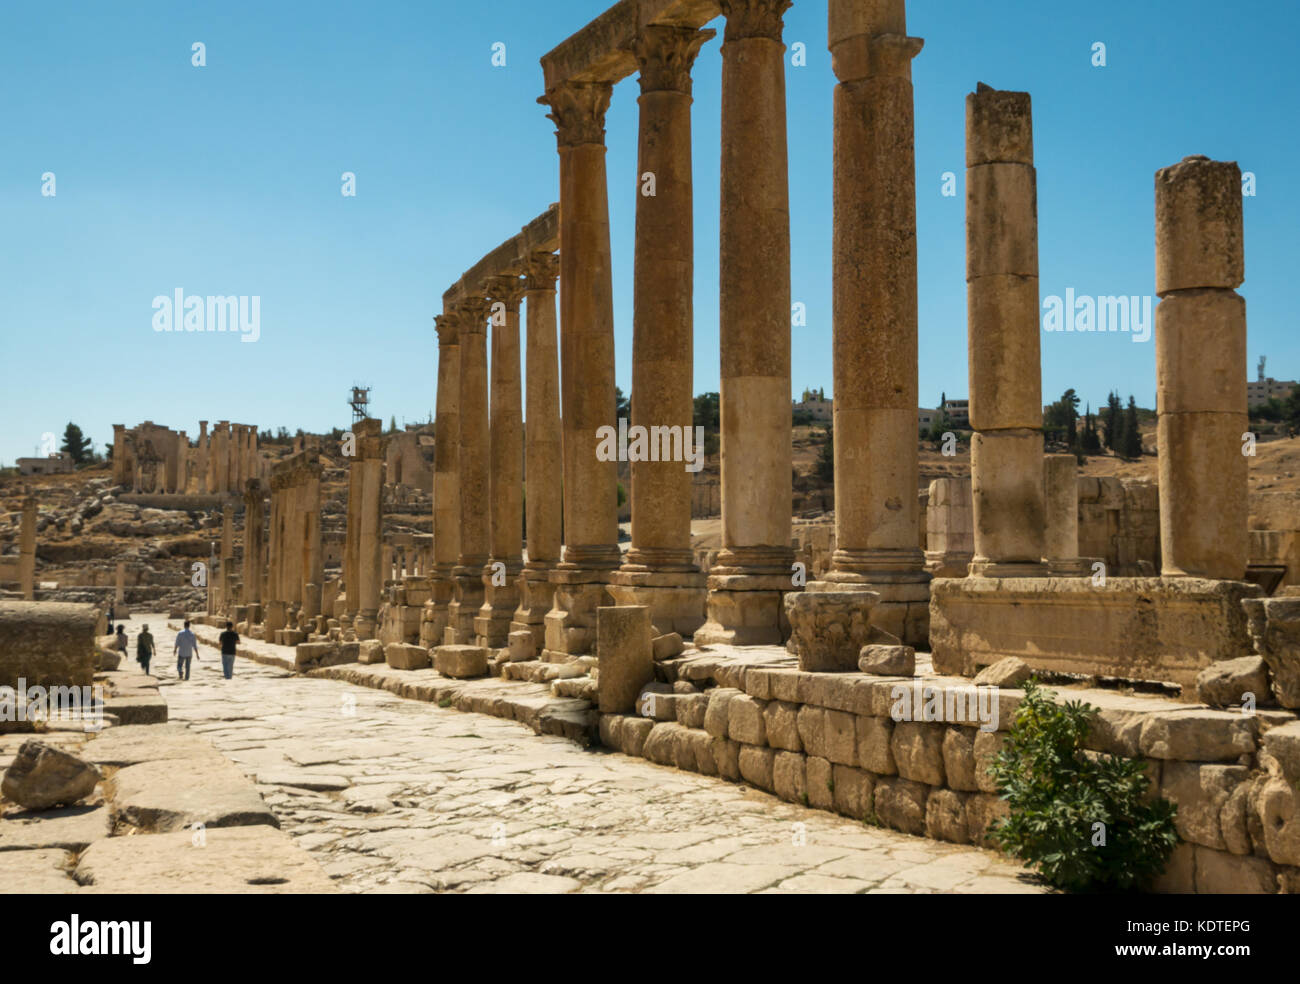 Les touristes à marcher le long du Cardo, ville romaine de Jerash la Gérasa antique, site archéologique et touristique, Jordanie, Moyen-Orient Banque D'Images